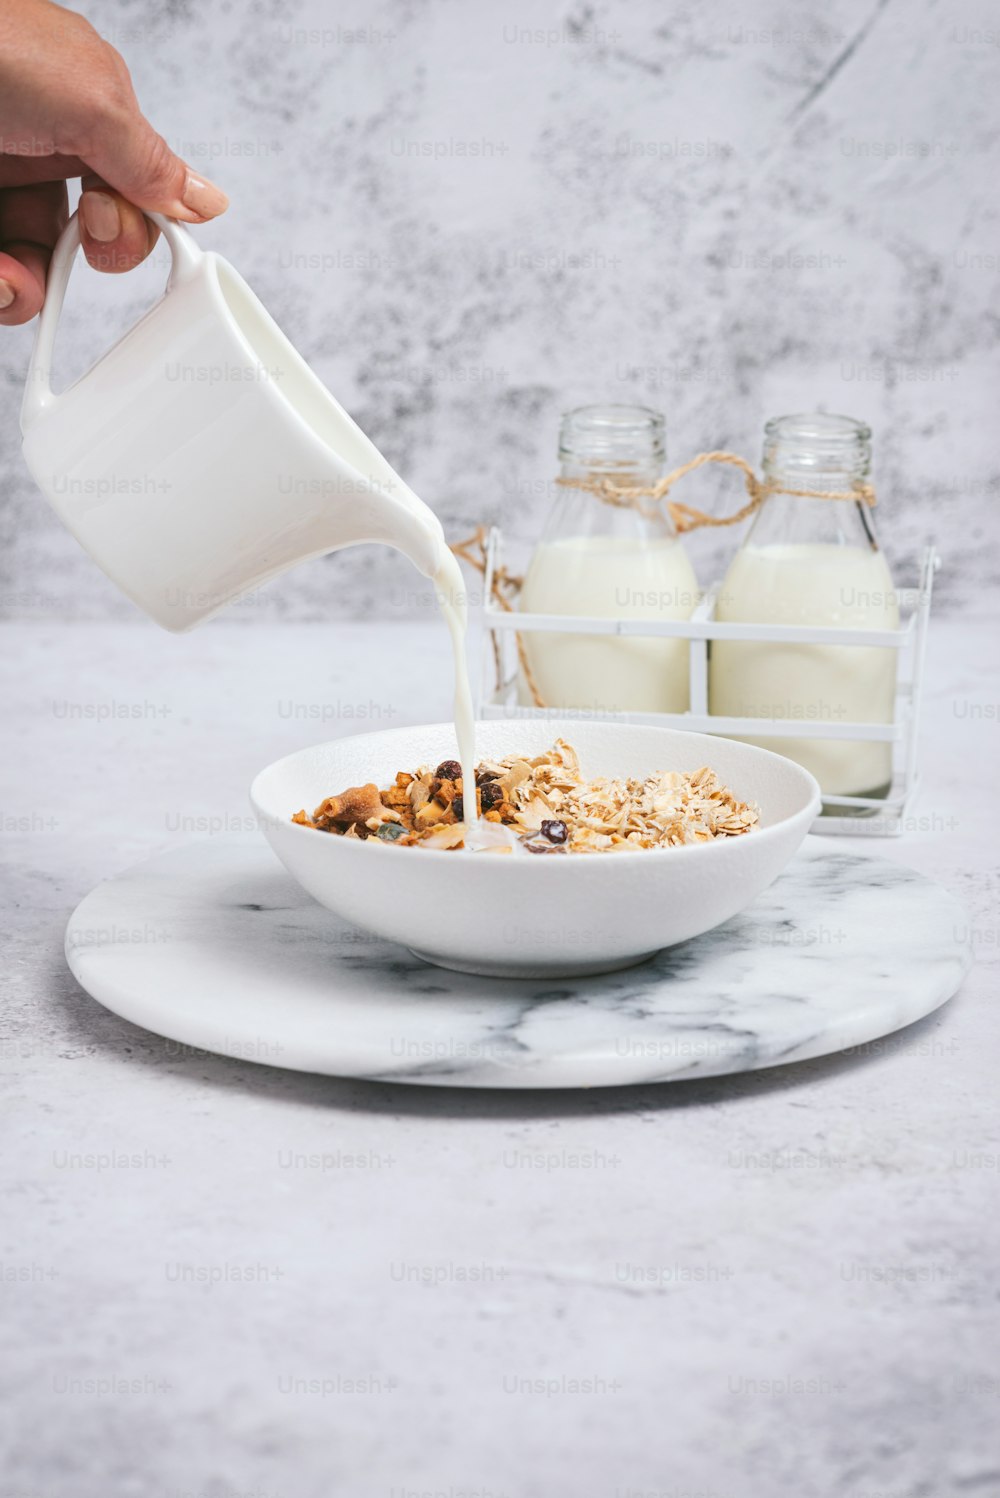 una persona vertiendo leche en un tazón de cereal